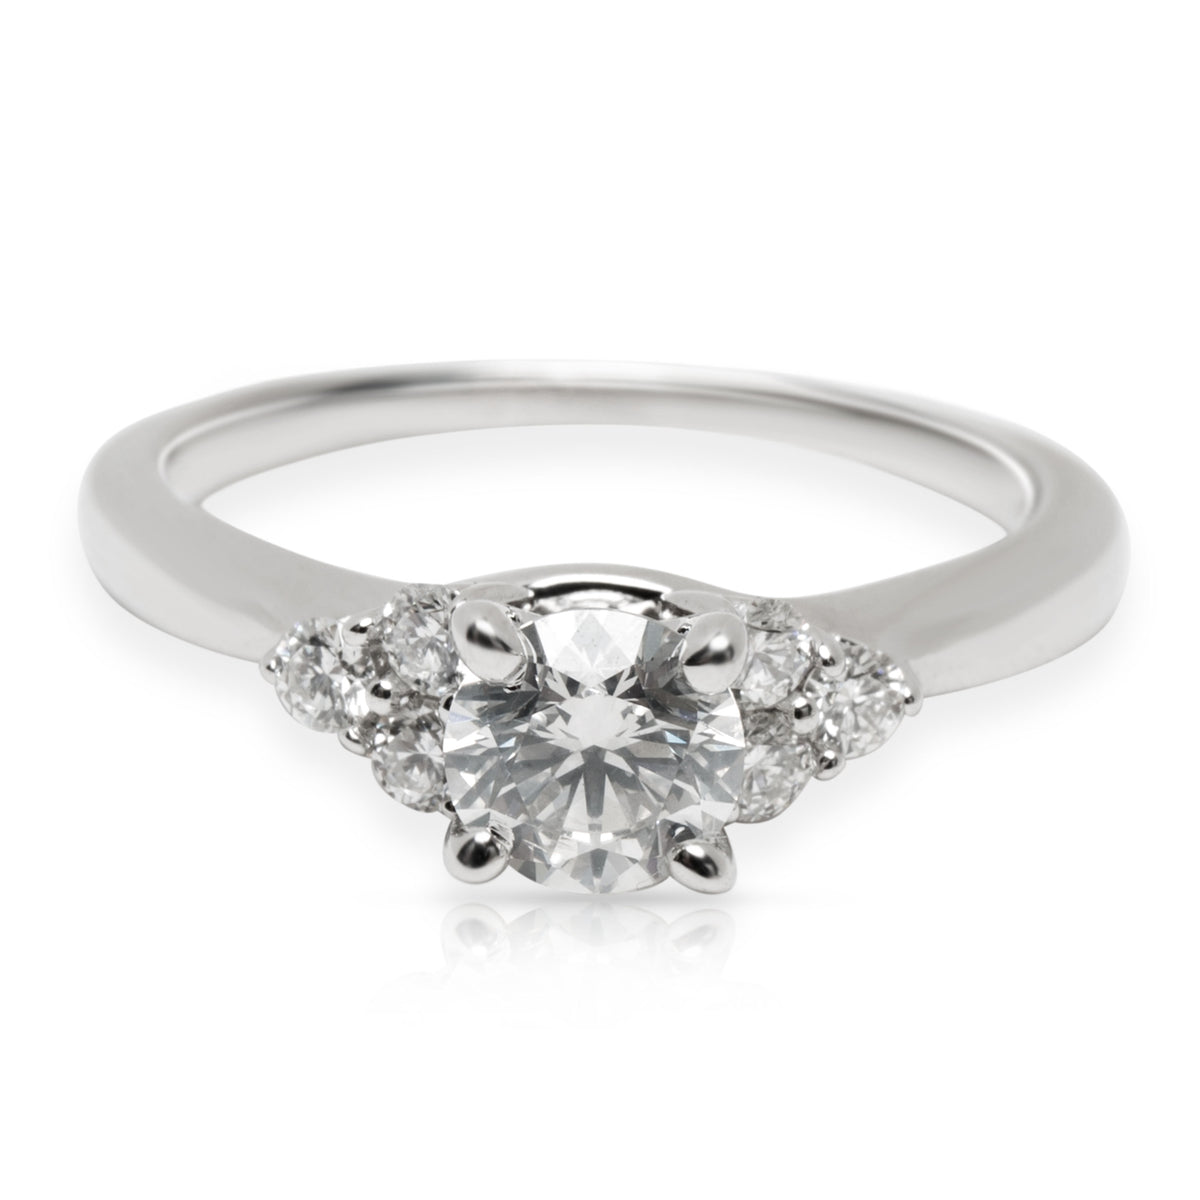 James Allen Diamond Diamond Engagement Ring in 18K White Gold E I1 0.95 CTW